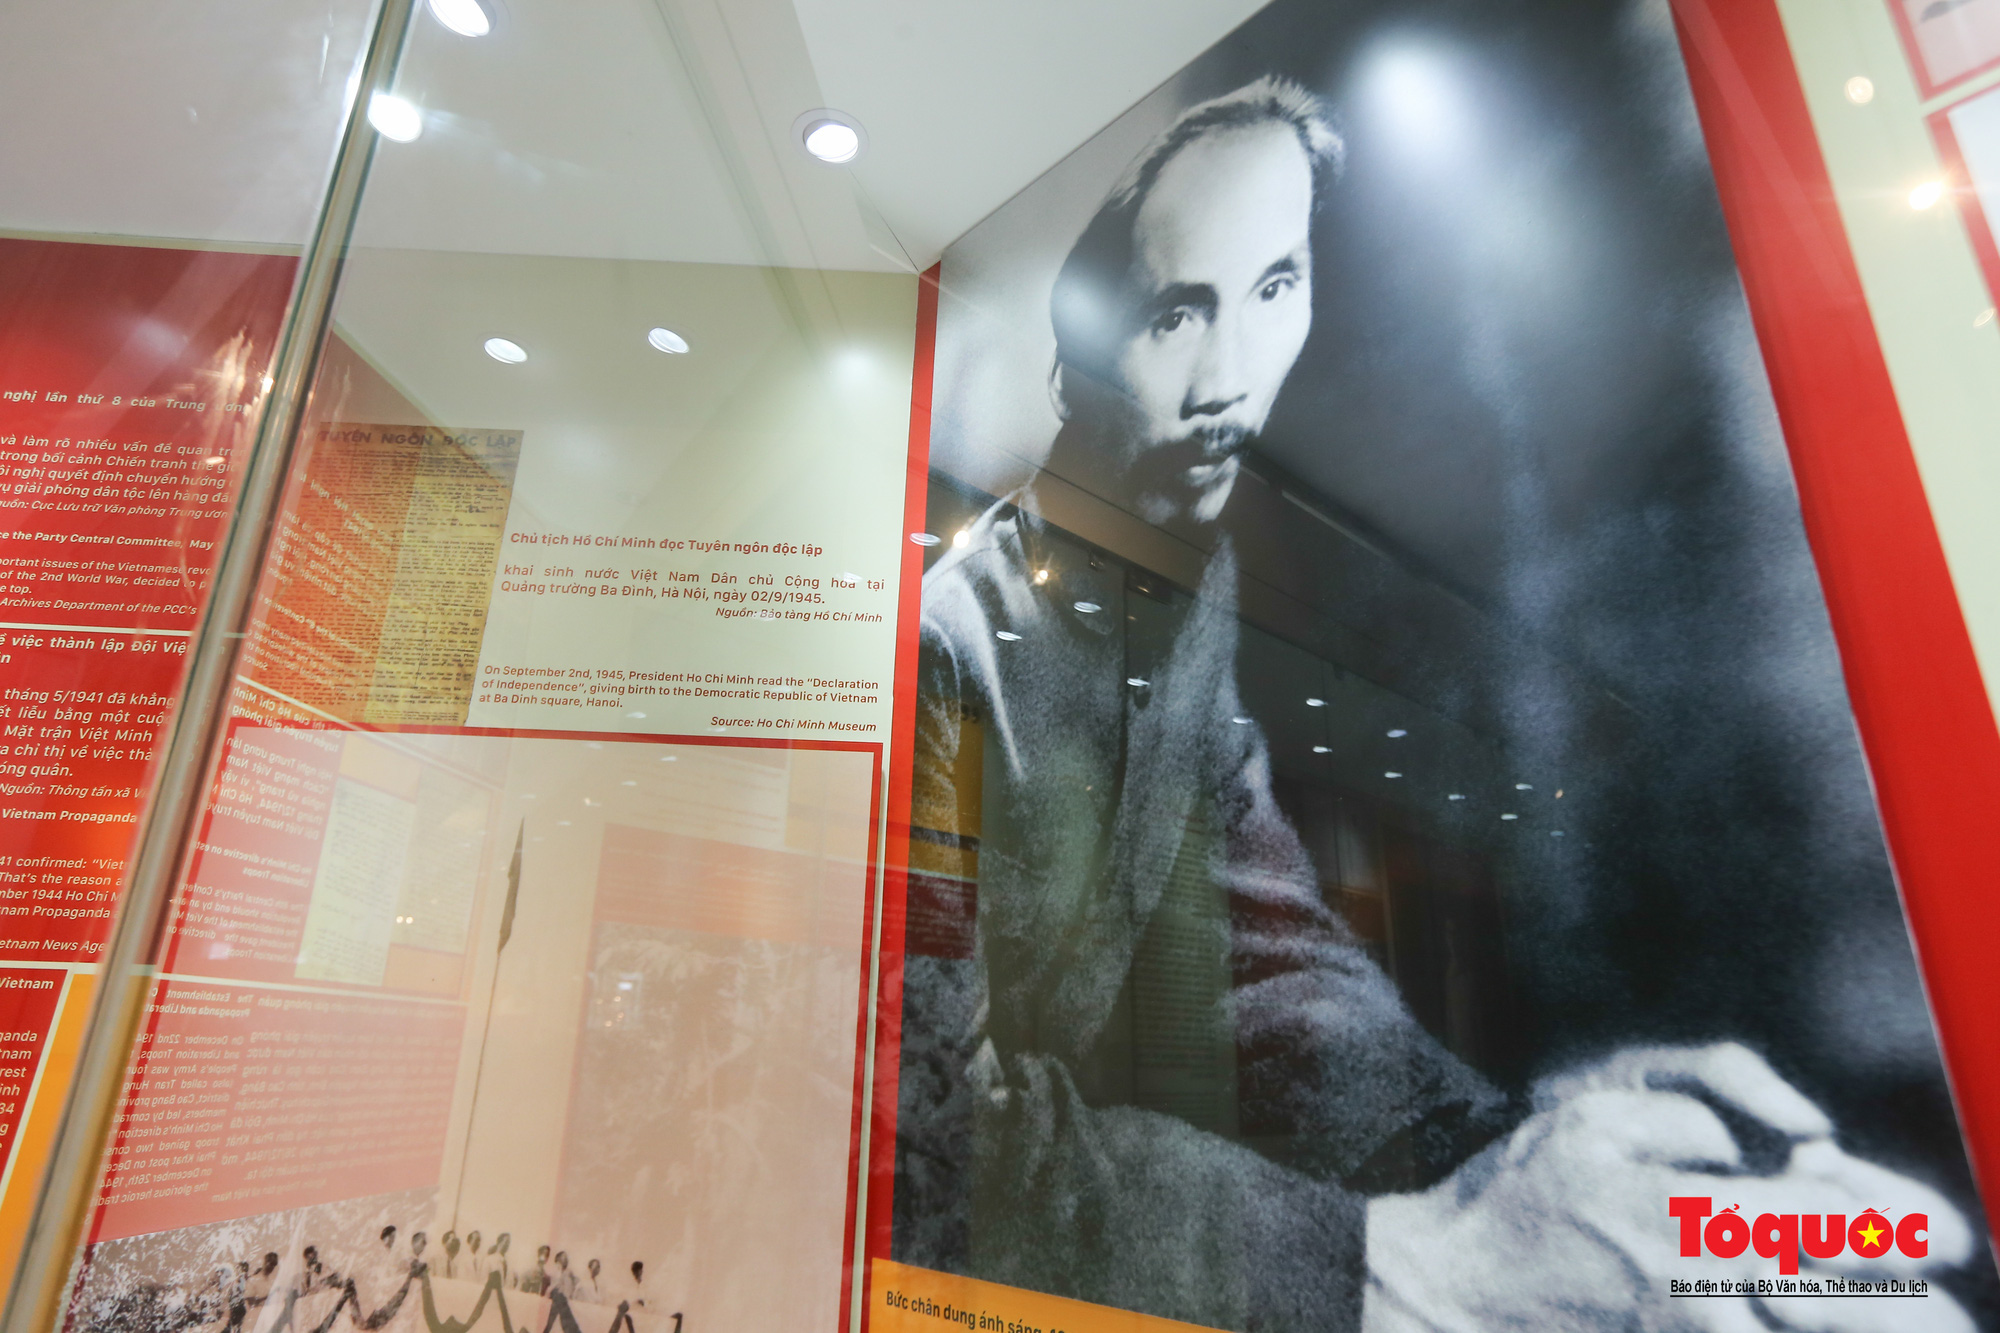 Khai mạc trưng bày chuyên đề: Hồ Chí Minh - Những nét phác họa chân dung; Những tấm gương bình dị mà cao quý  - Ảnh 7.